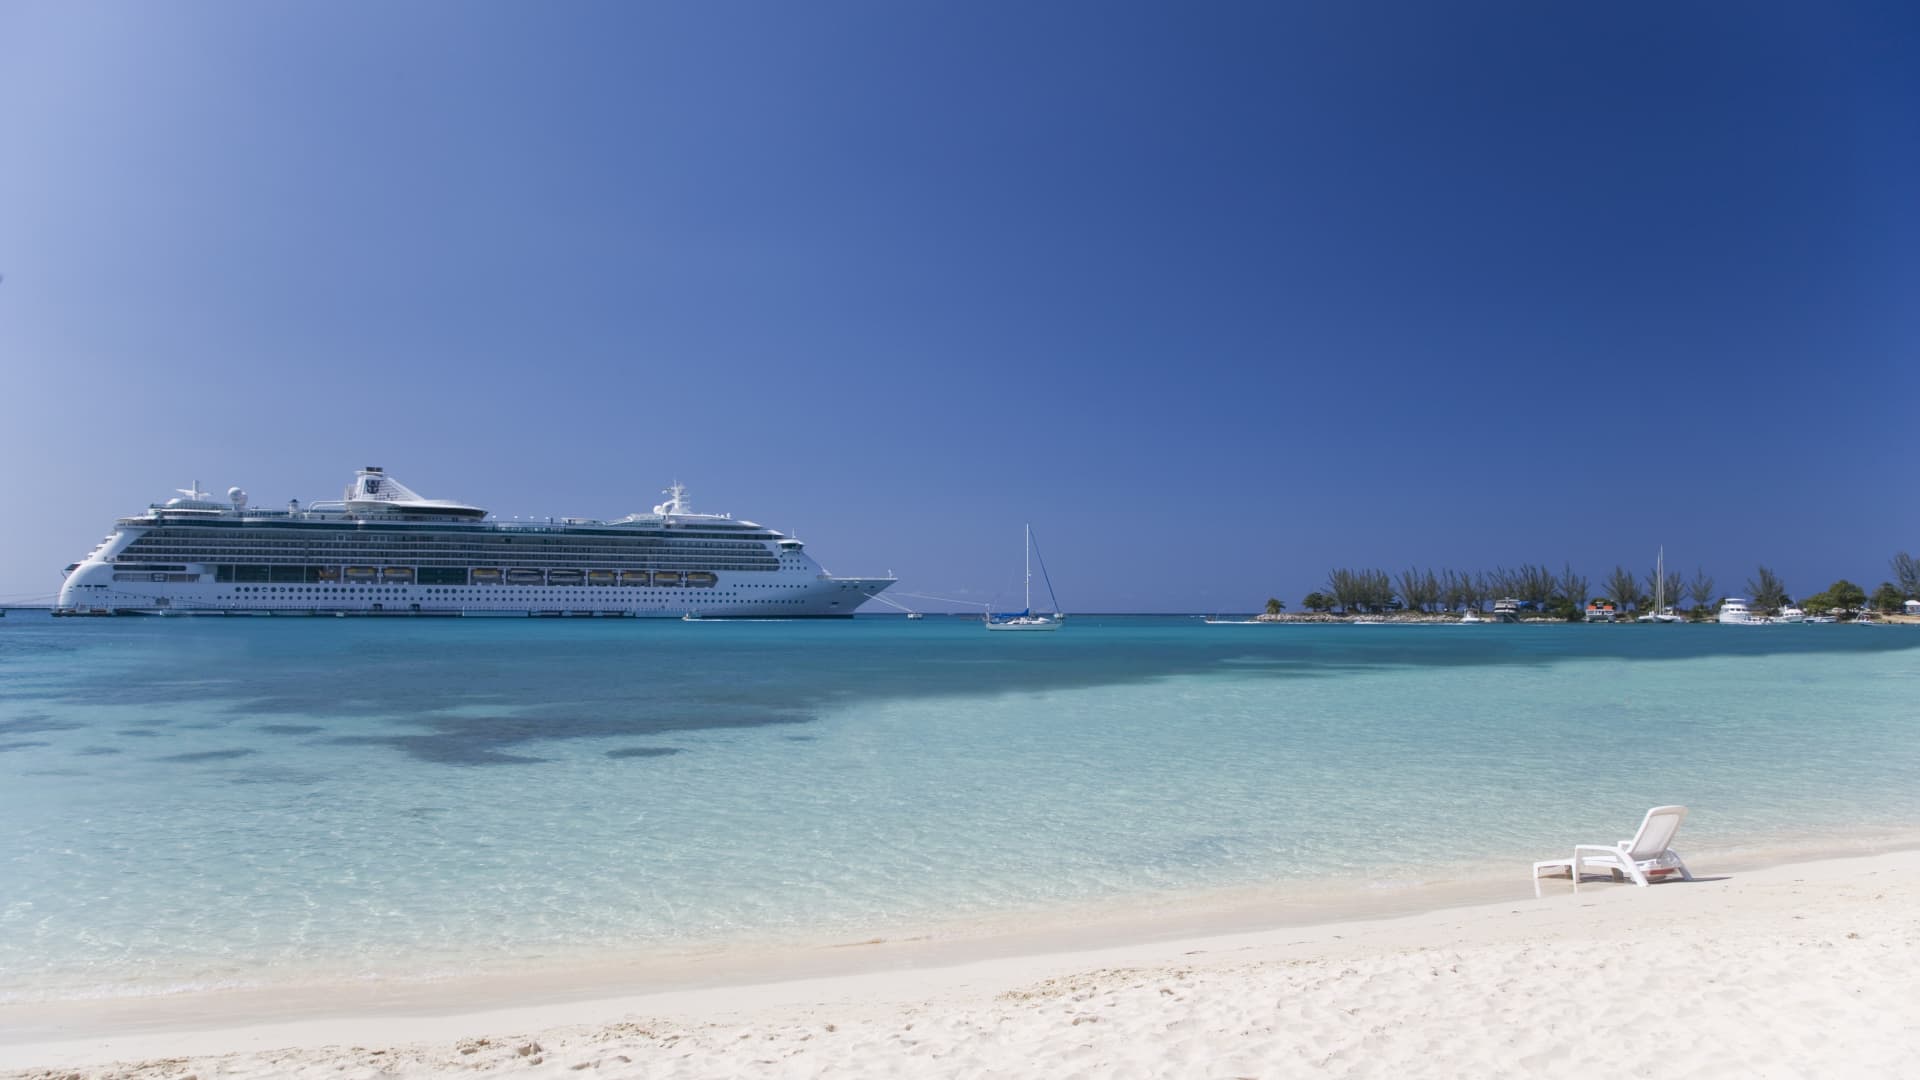 A cruise ship approaches the harbor in Ocho Rios, Jamaica.